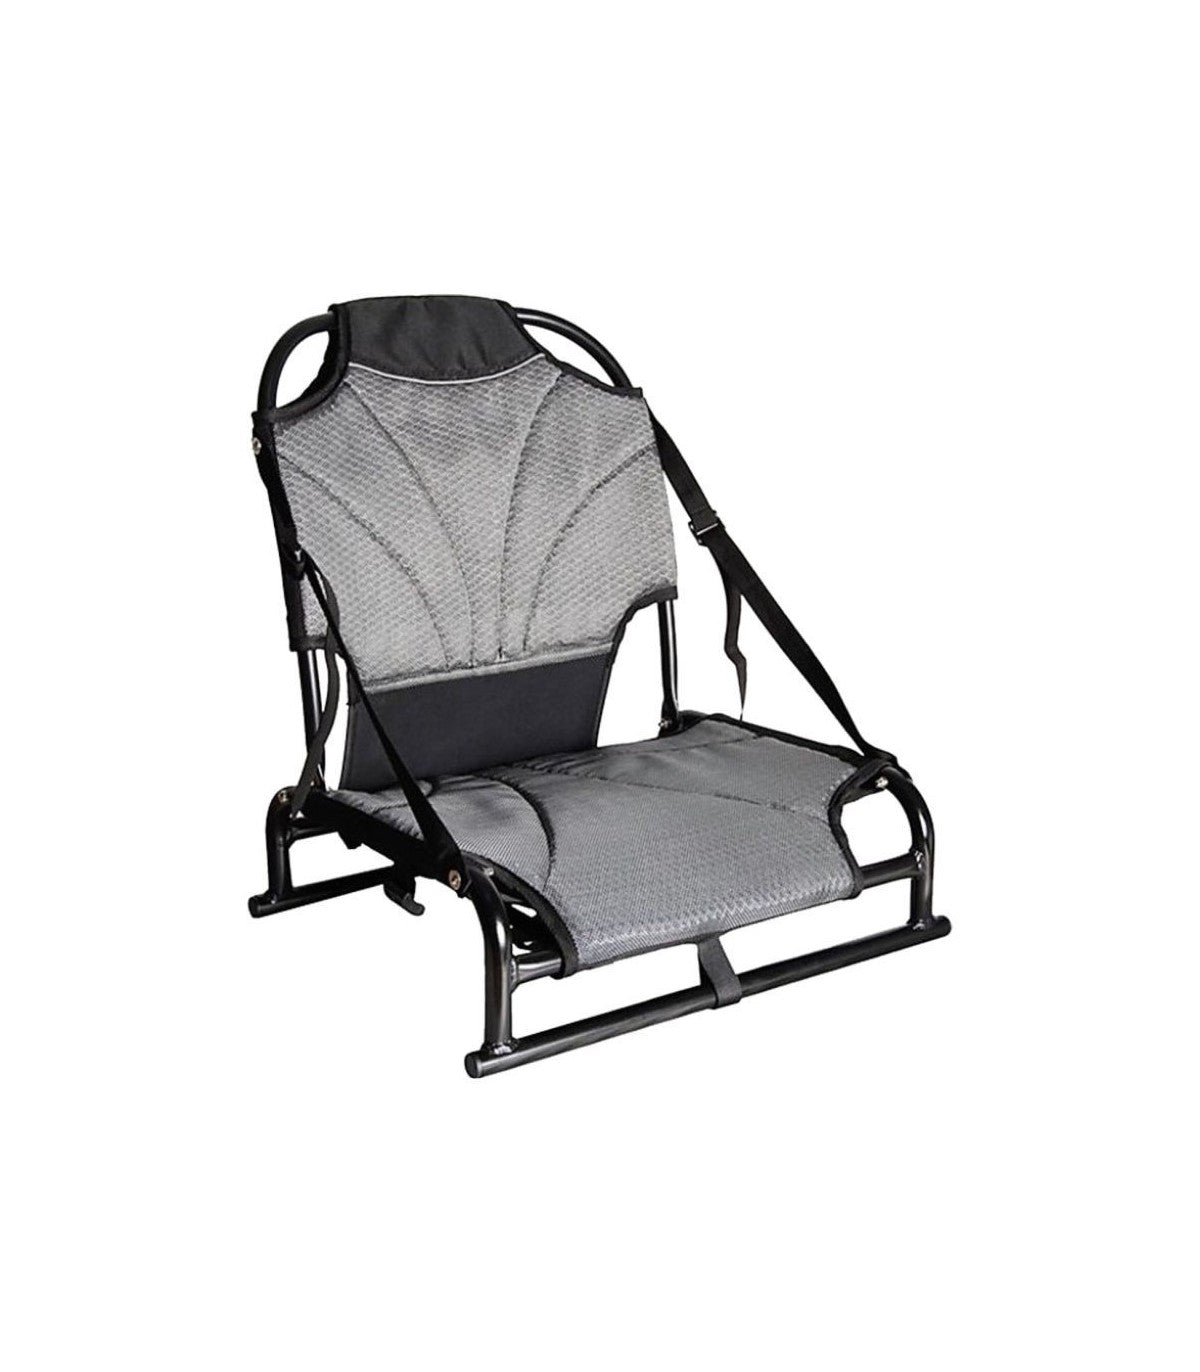 Asiento silla Aluminio para Kayak modelo A